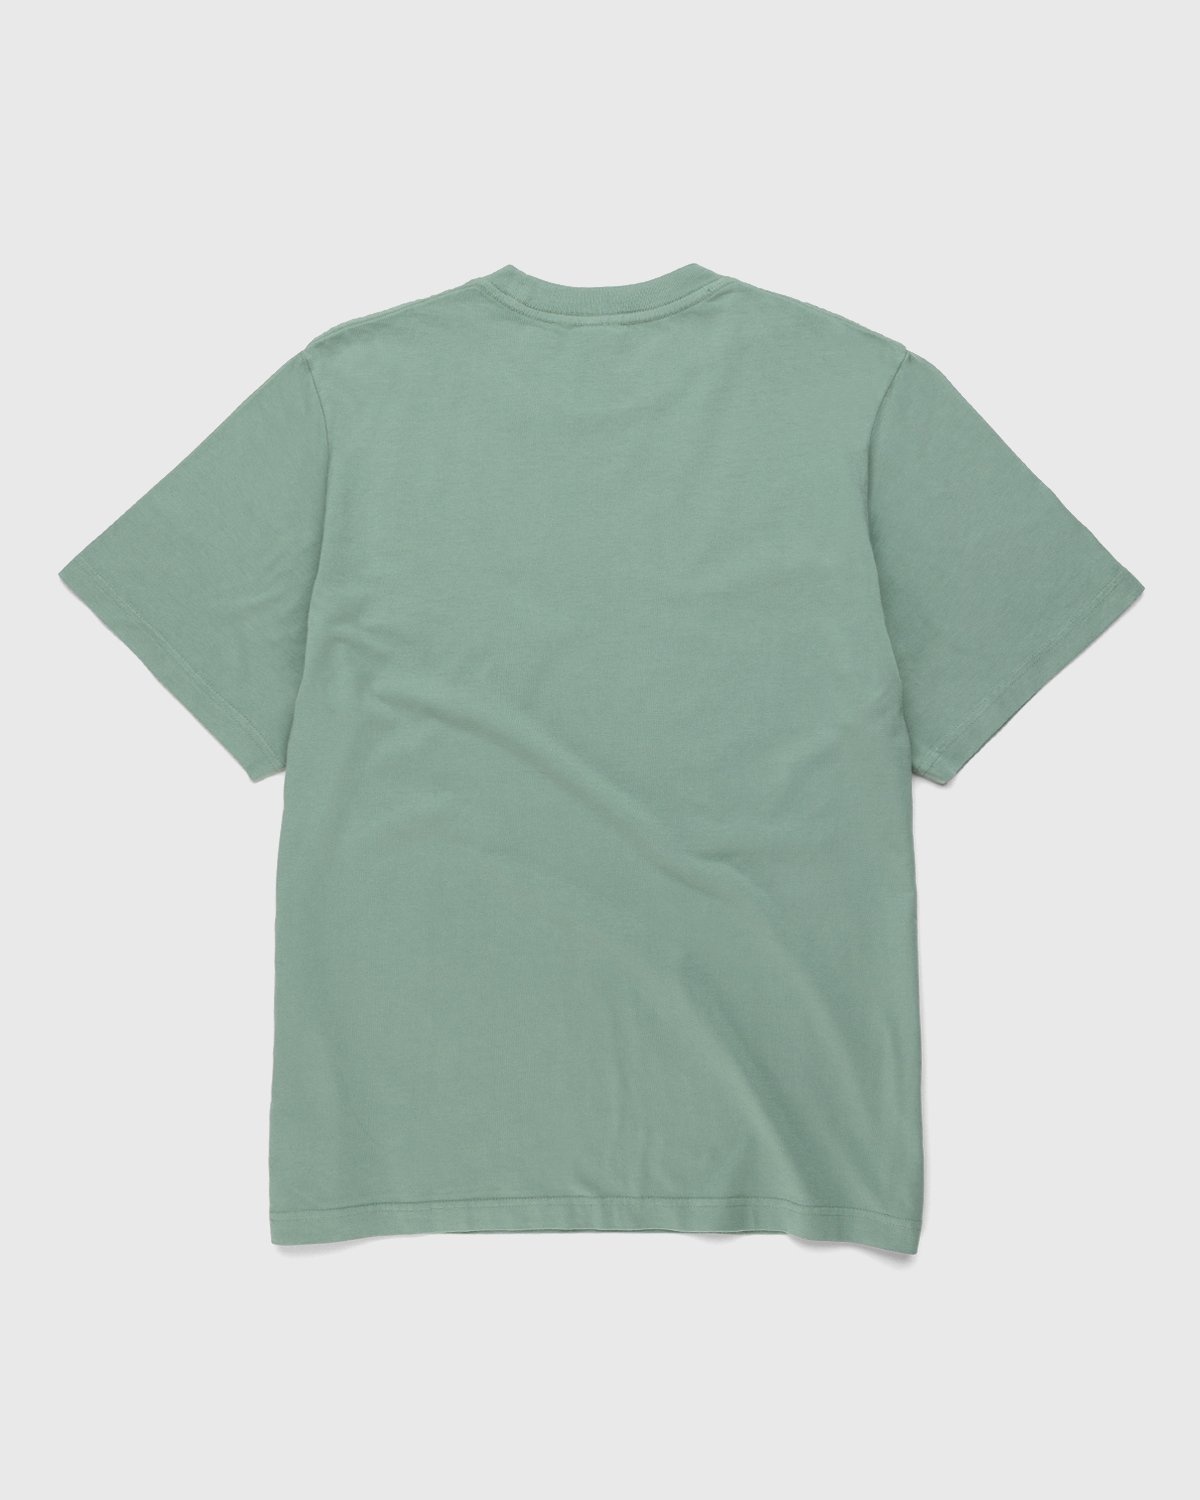 Noon Goons – Co-Ed T-Shirt Green - T-Shirts - Green - Image 2